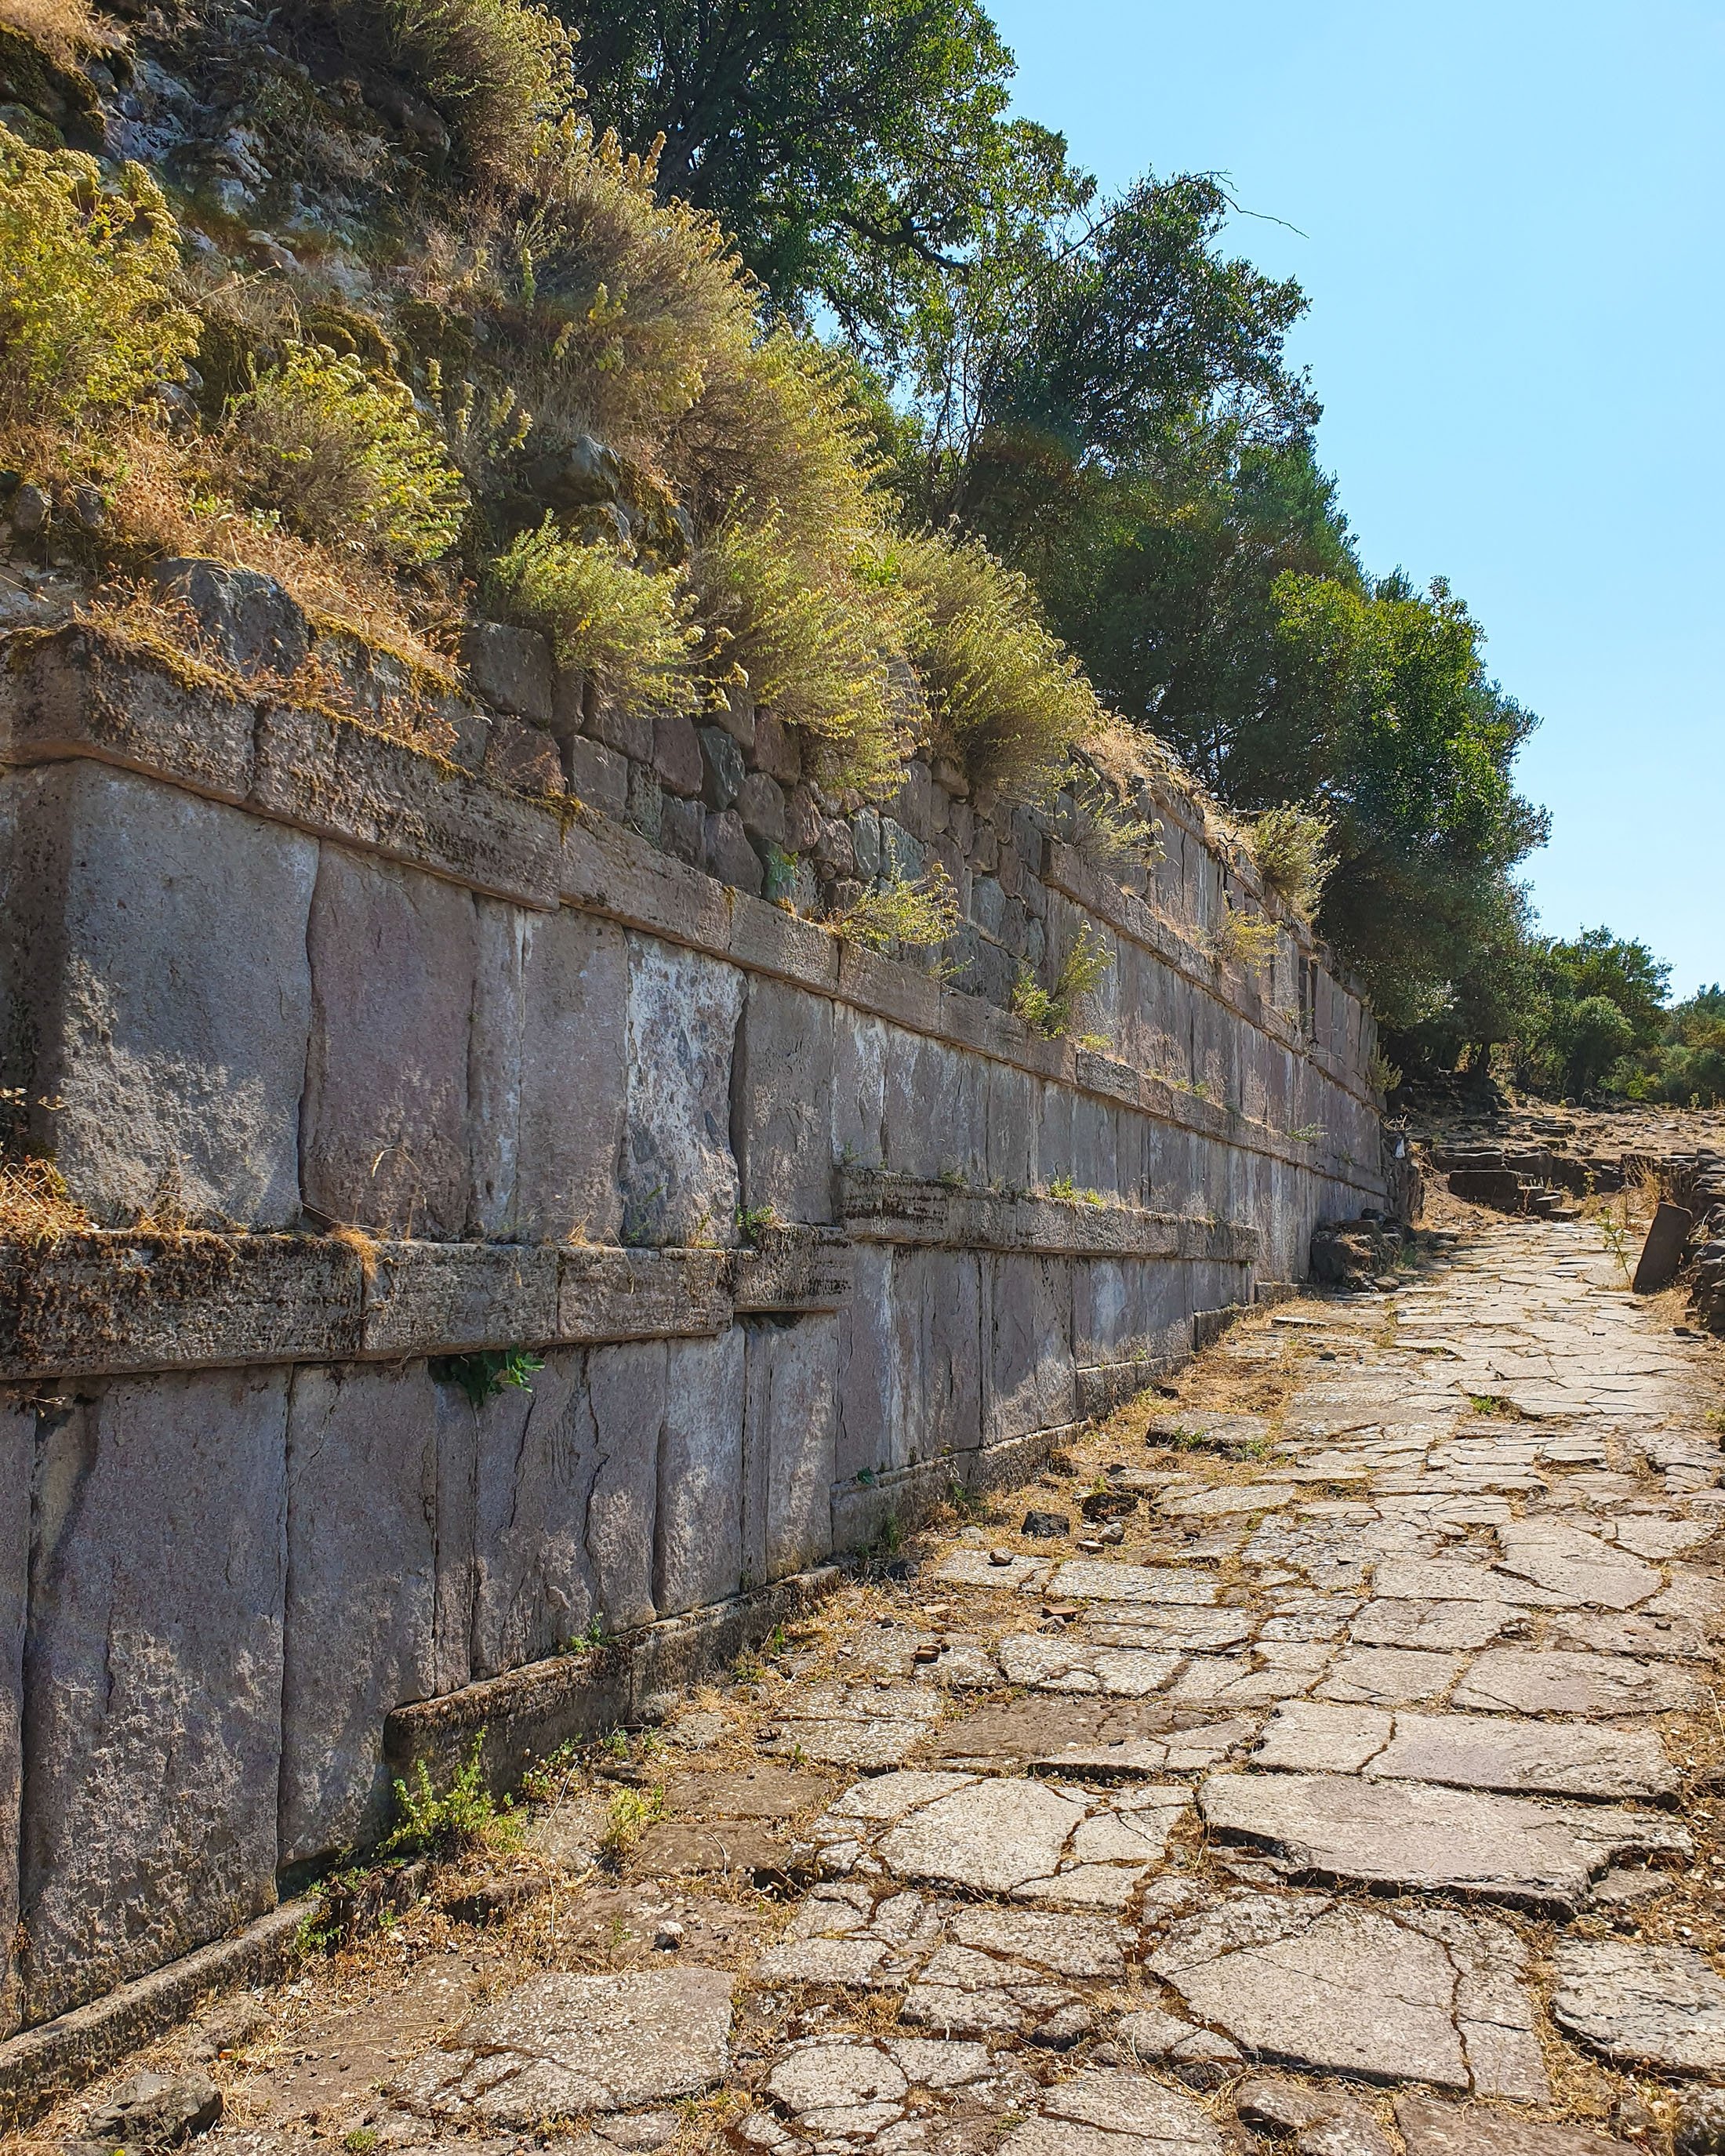 Ancient walls and the pedestrian path at Aigai. (Photo by Argun Konuk)